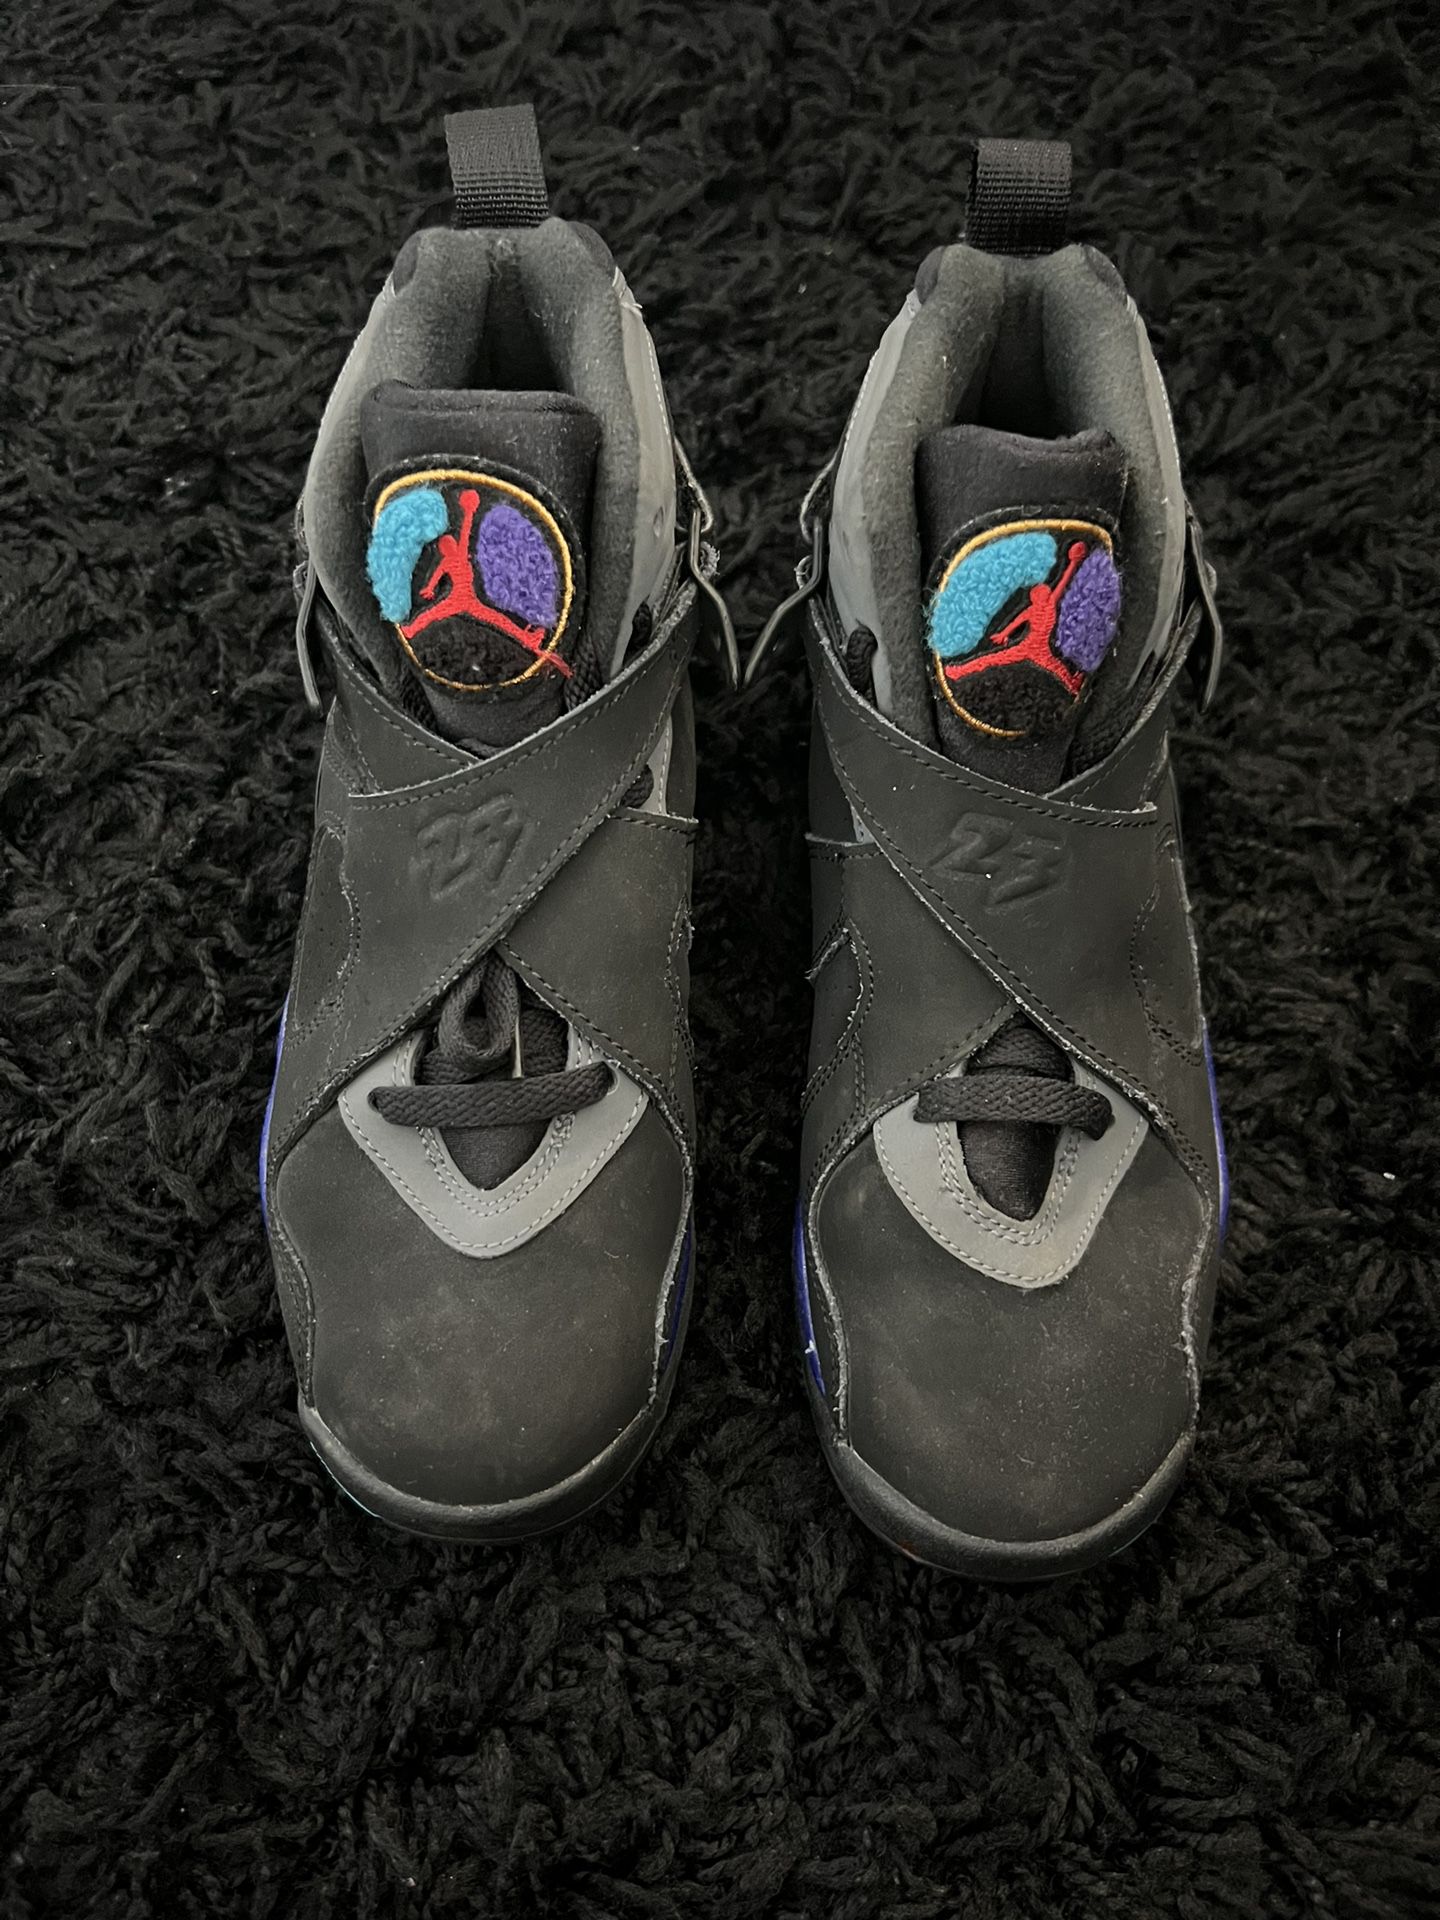 Air Jordan “ Aqua “ 8s 